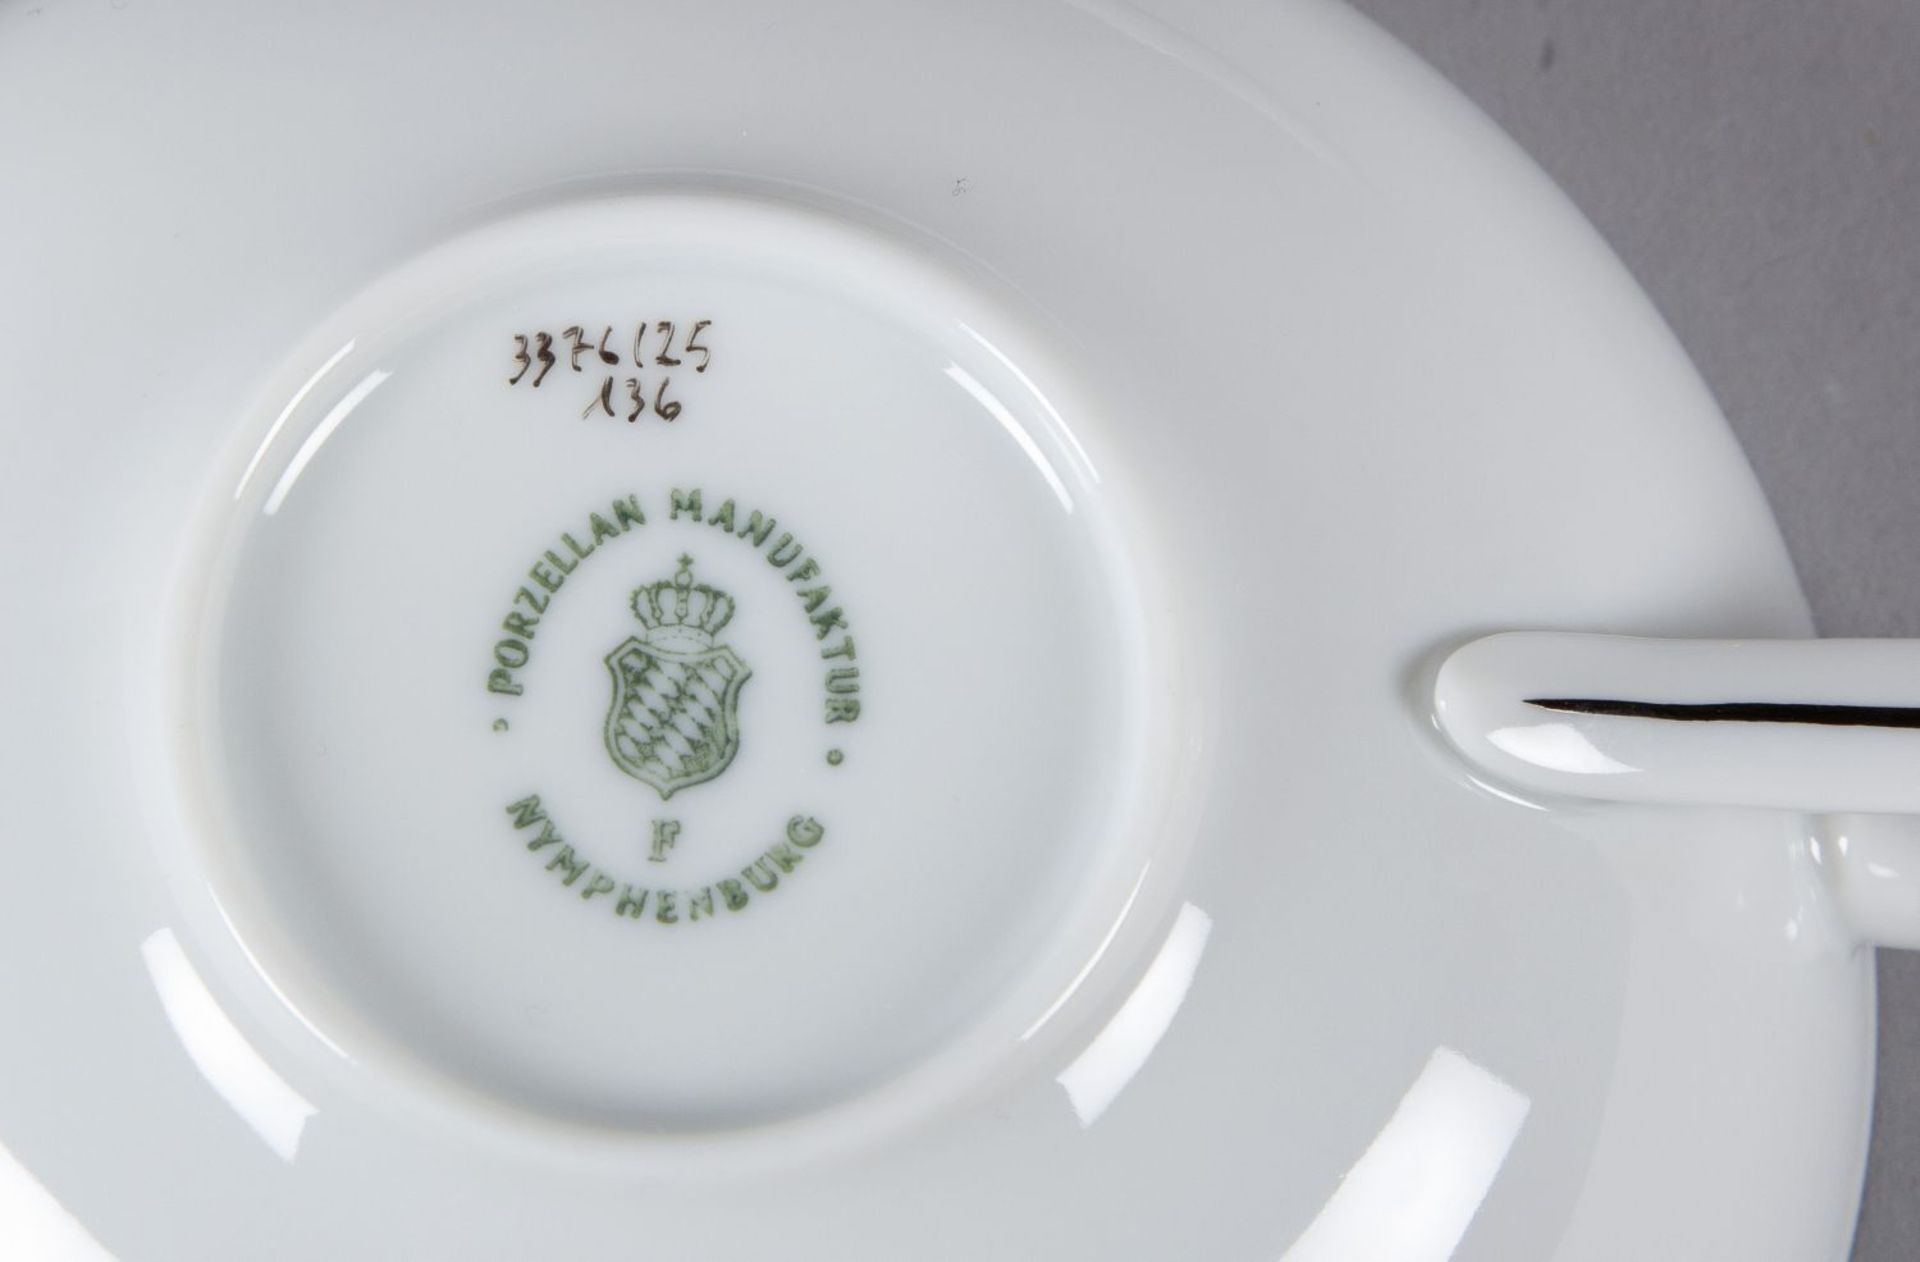 Teetasse auf großer Untertasse Schwarzer Rand. Geprägtes Rautenschild. Grüne Manufakturmarke. Nymphe - Image 2 of 2